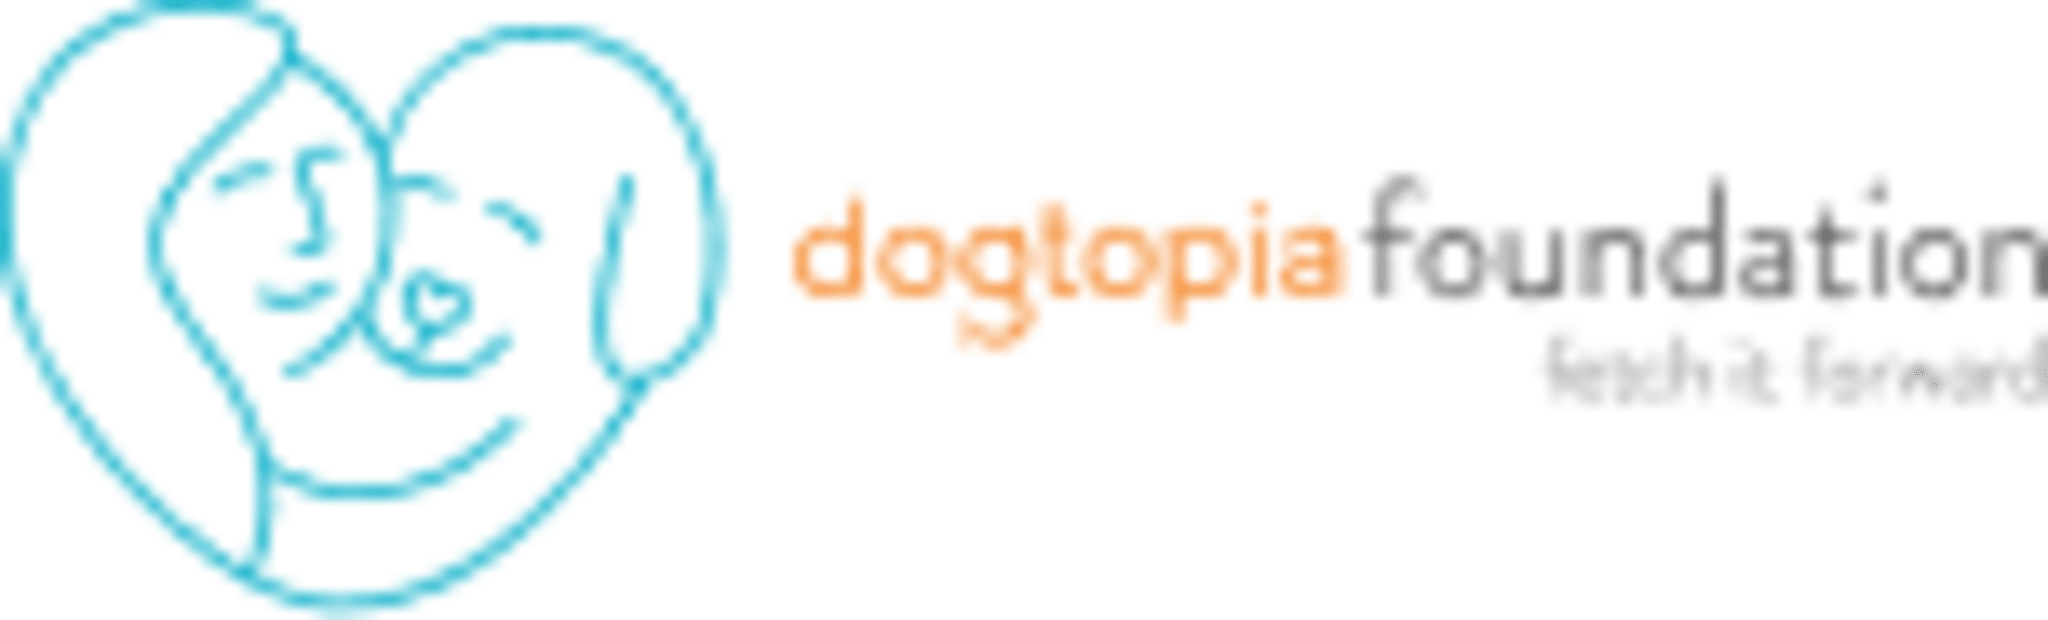 Dogtoia Foundation Logo